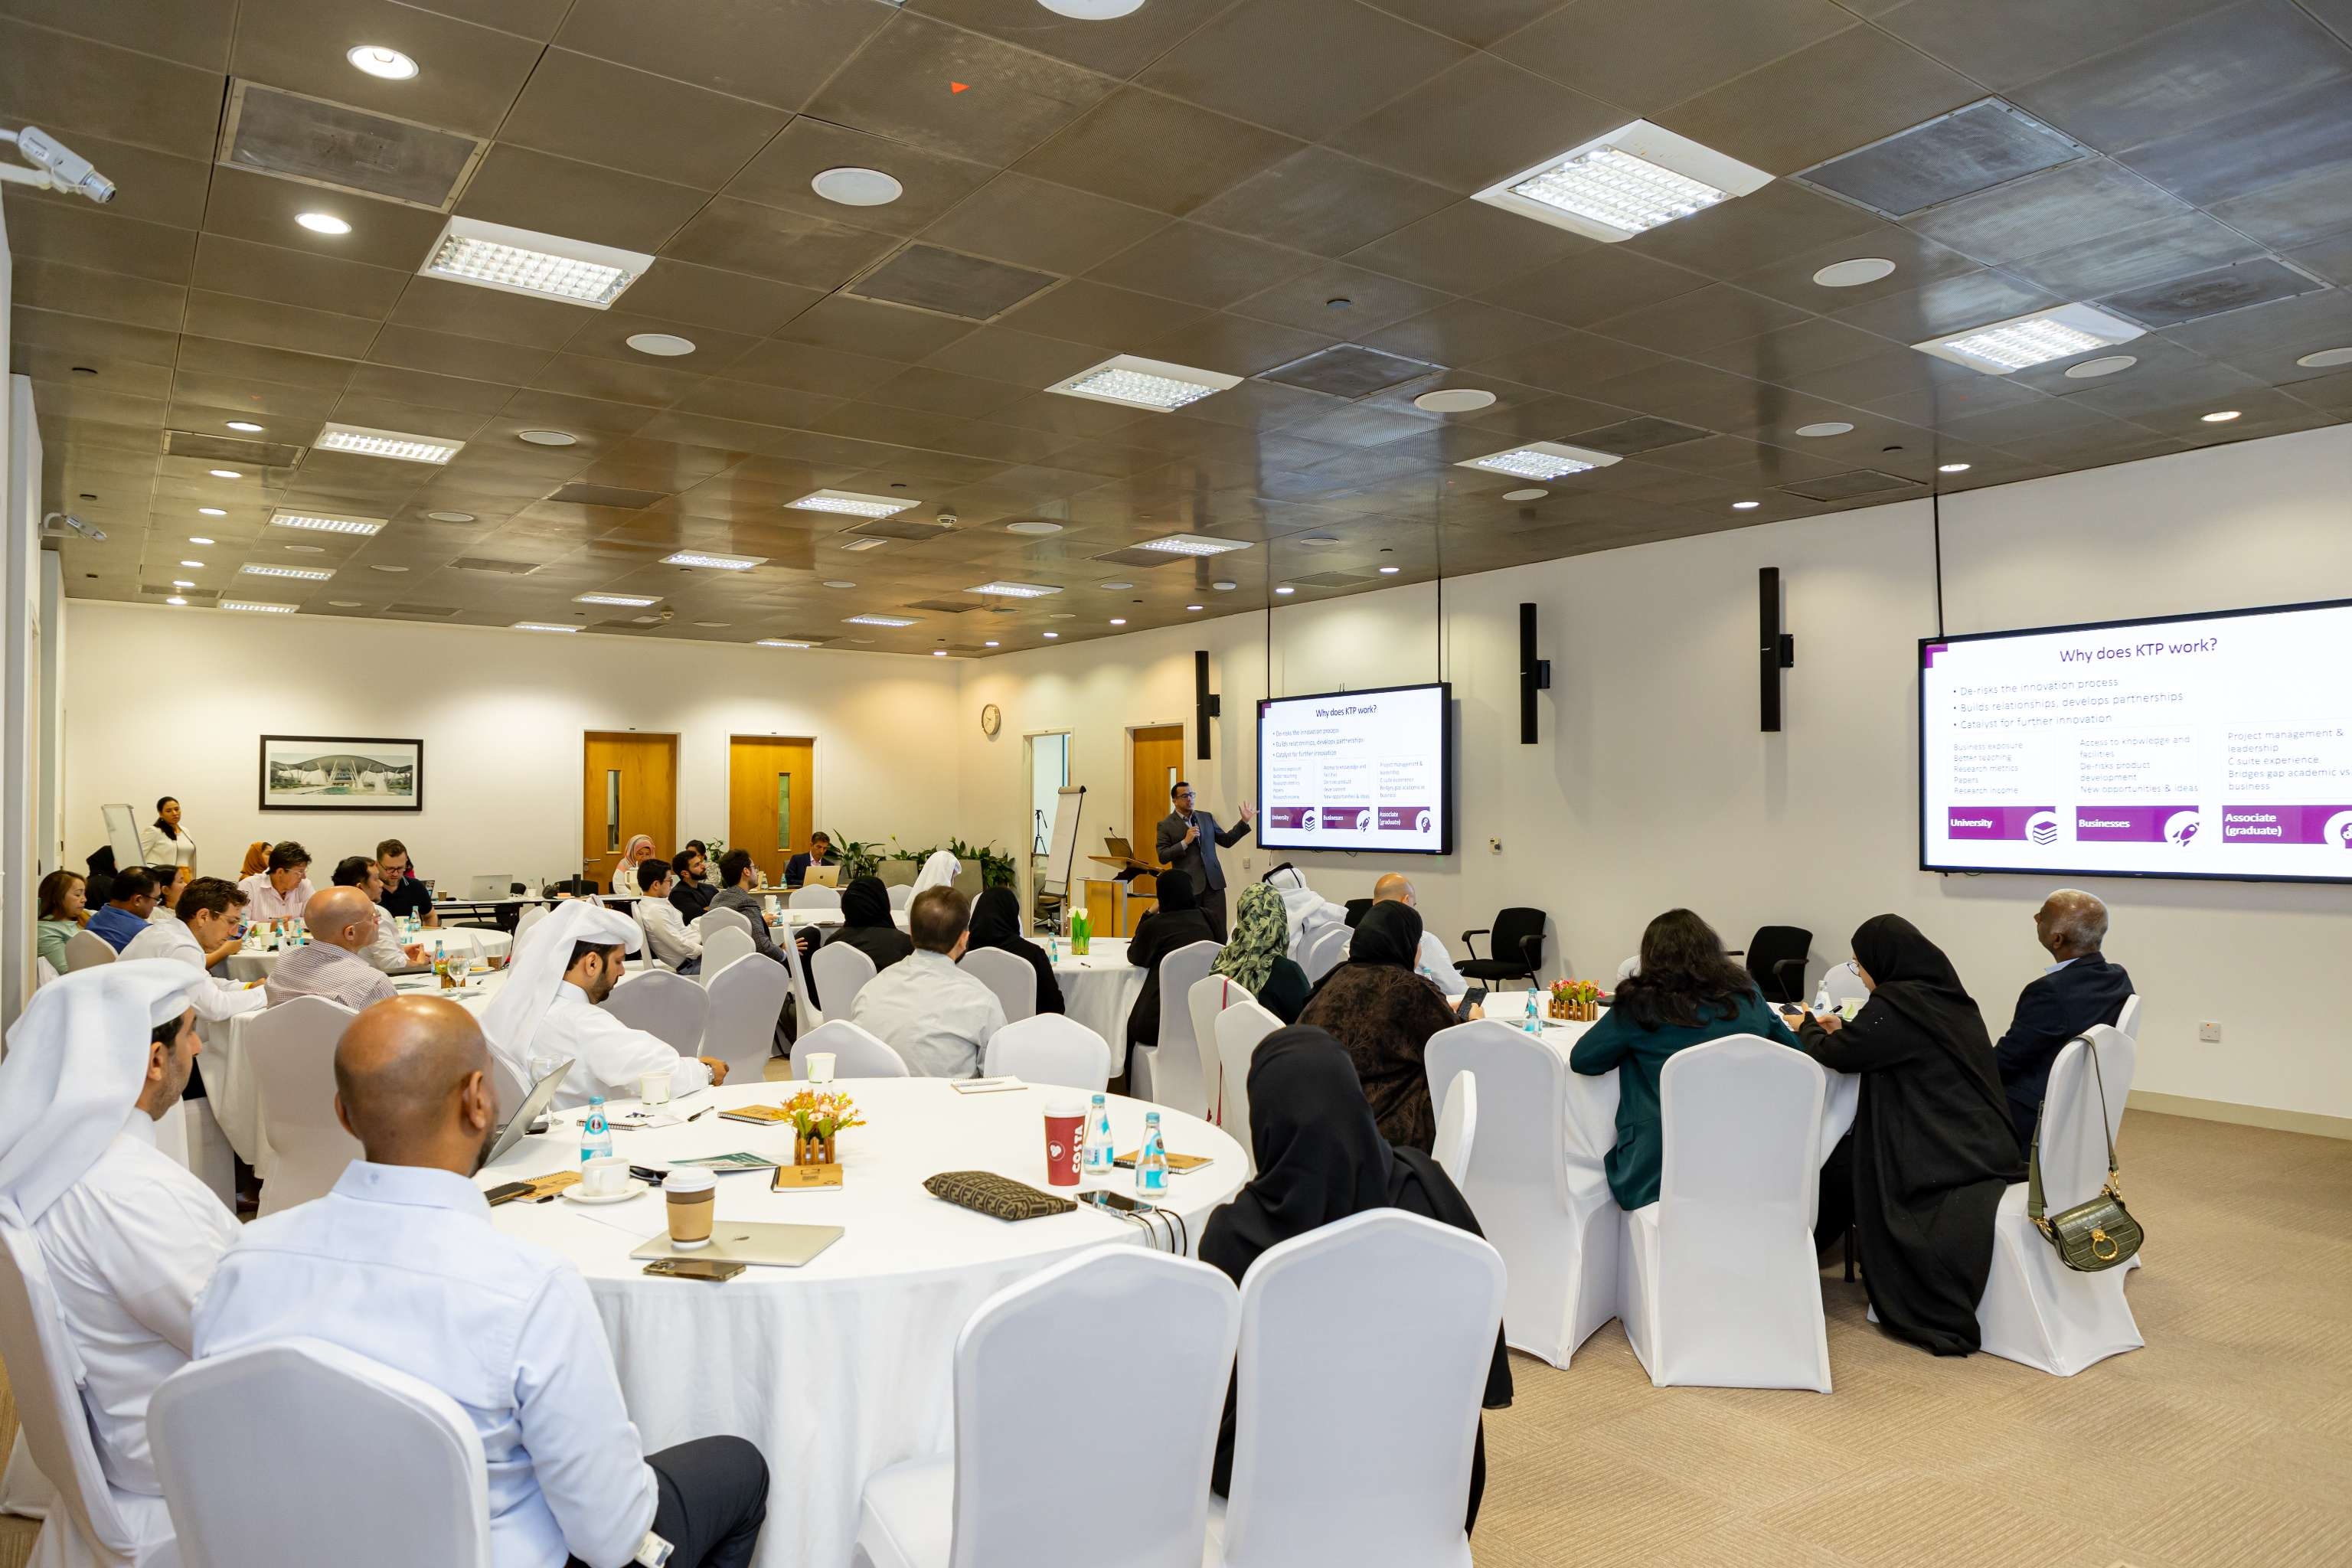 مجلس قطر للبحوث والتطوير والابتكار برنامج قادة الابتكار المؤسسي ٣.jpeg